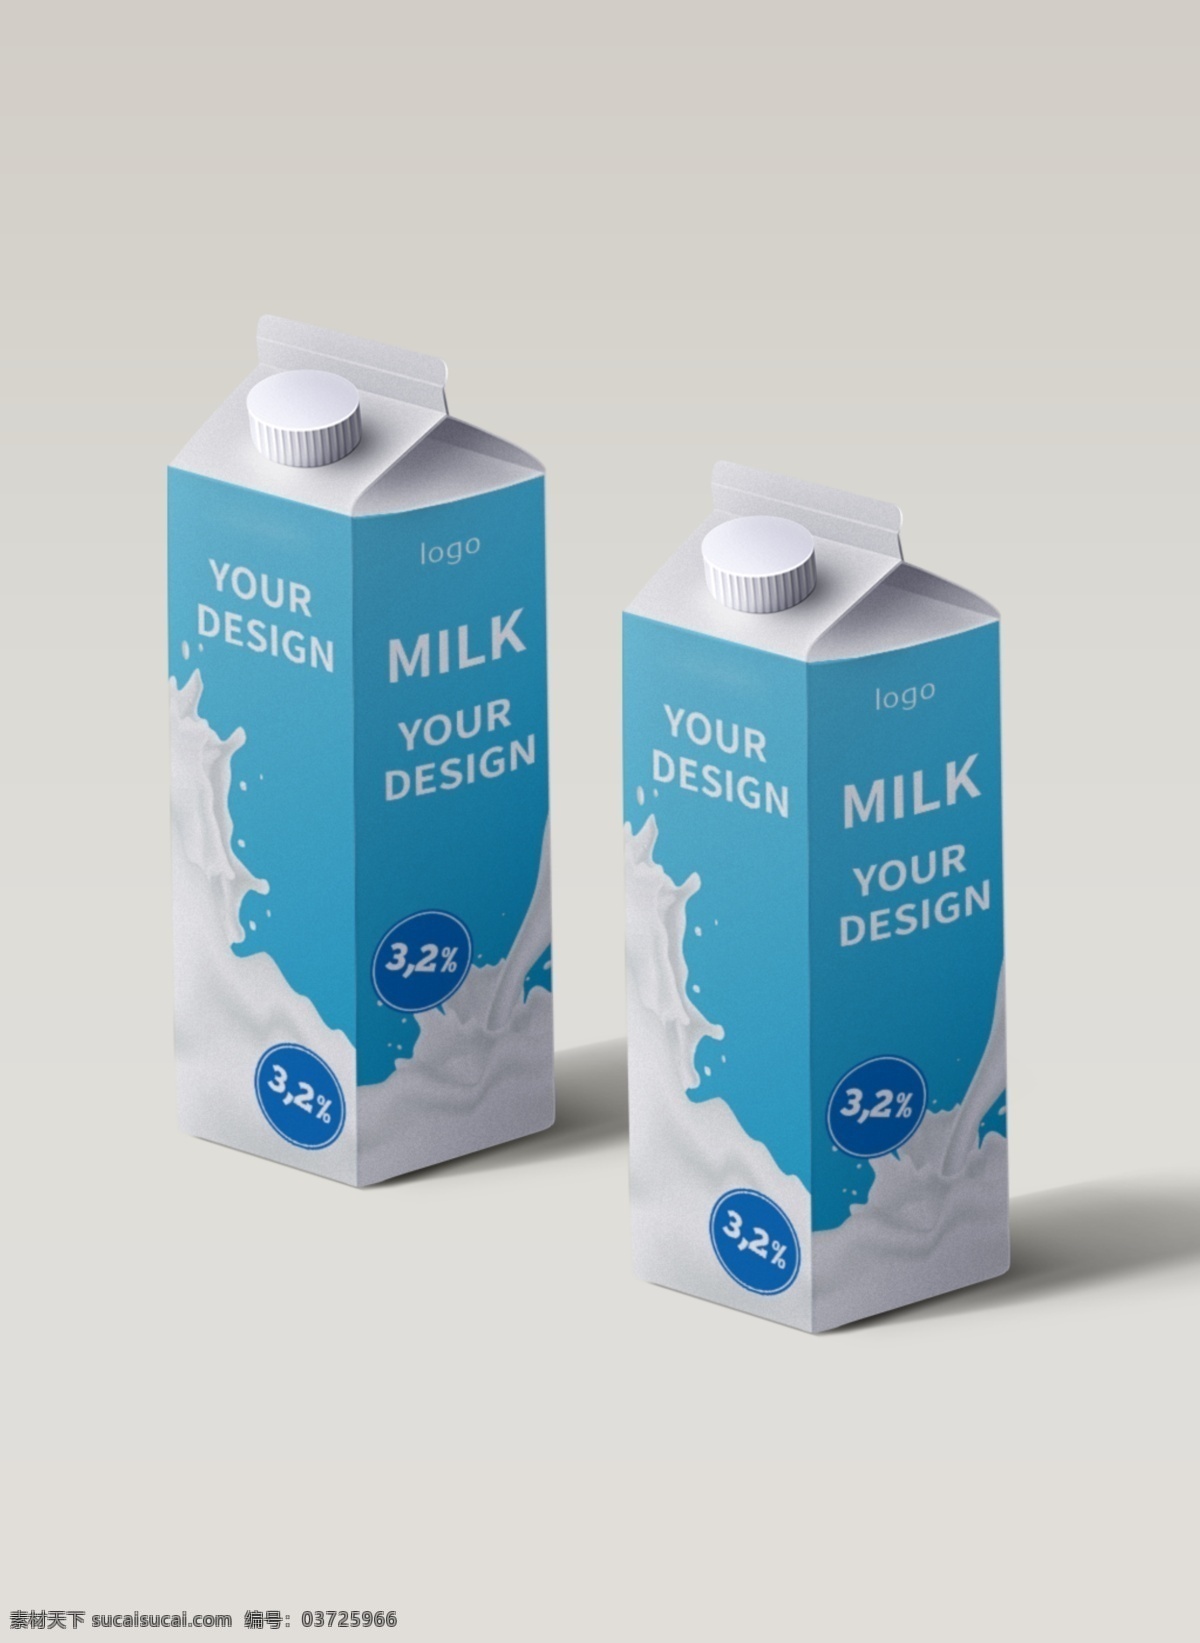 牛奶包装样机 牛奶瓶 包装 样机 牛奶 蓝色